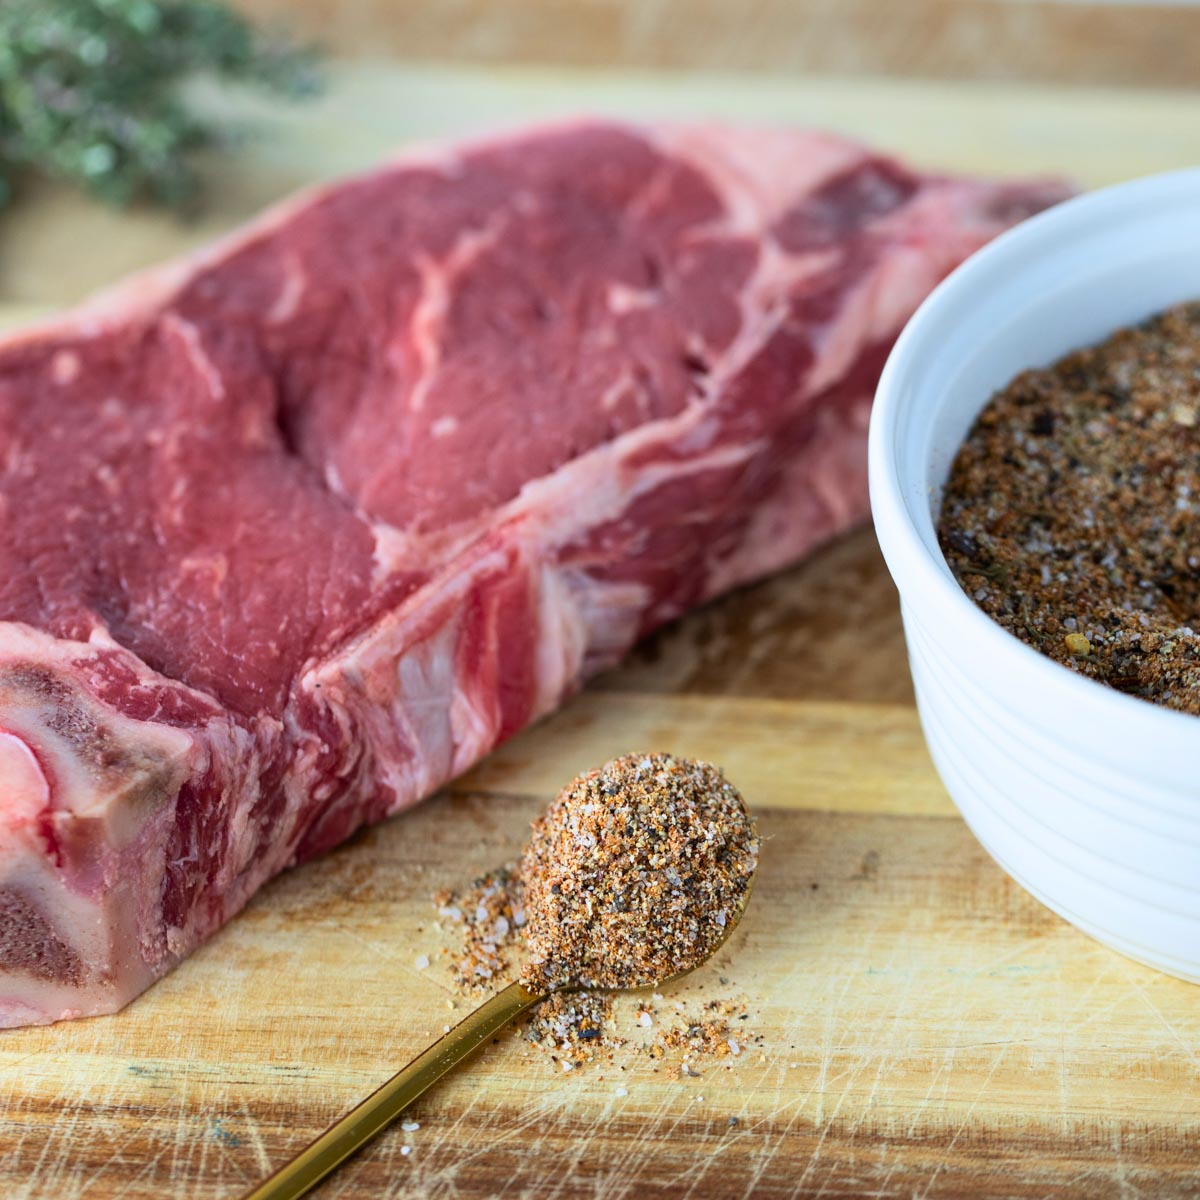 spoon of steak seasoning sitting on wooden cutting board next to steak and bowl of steak seasoning